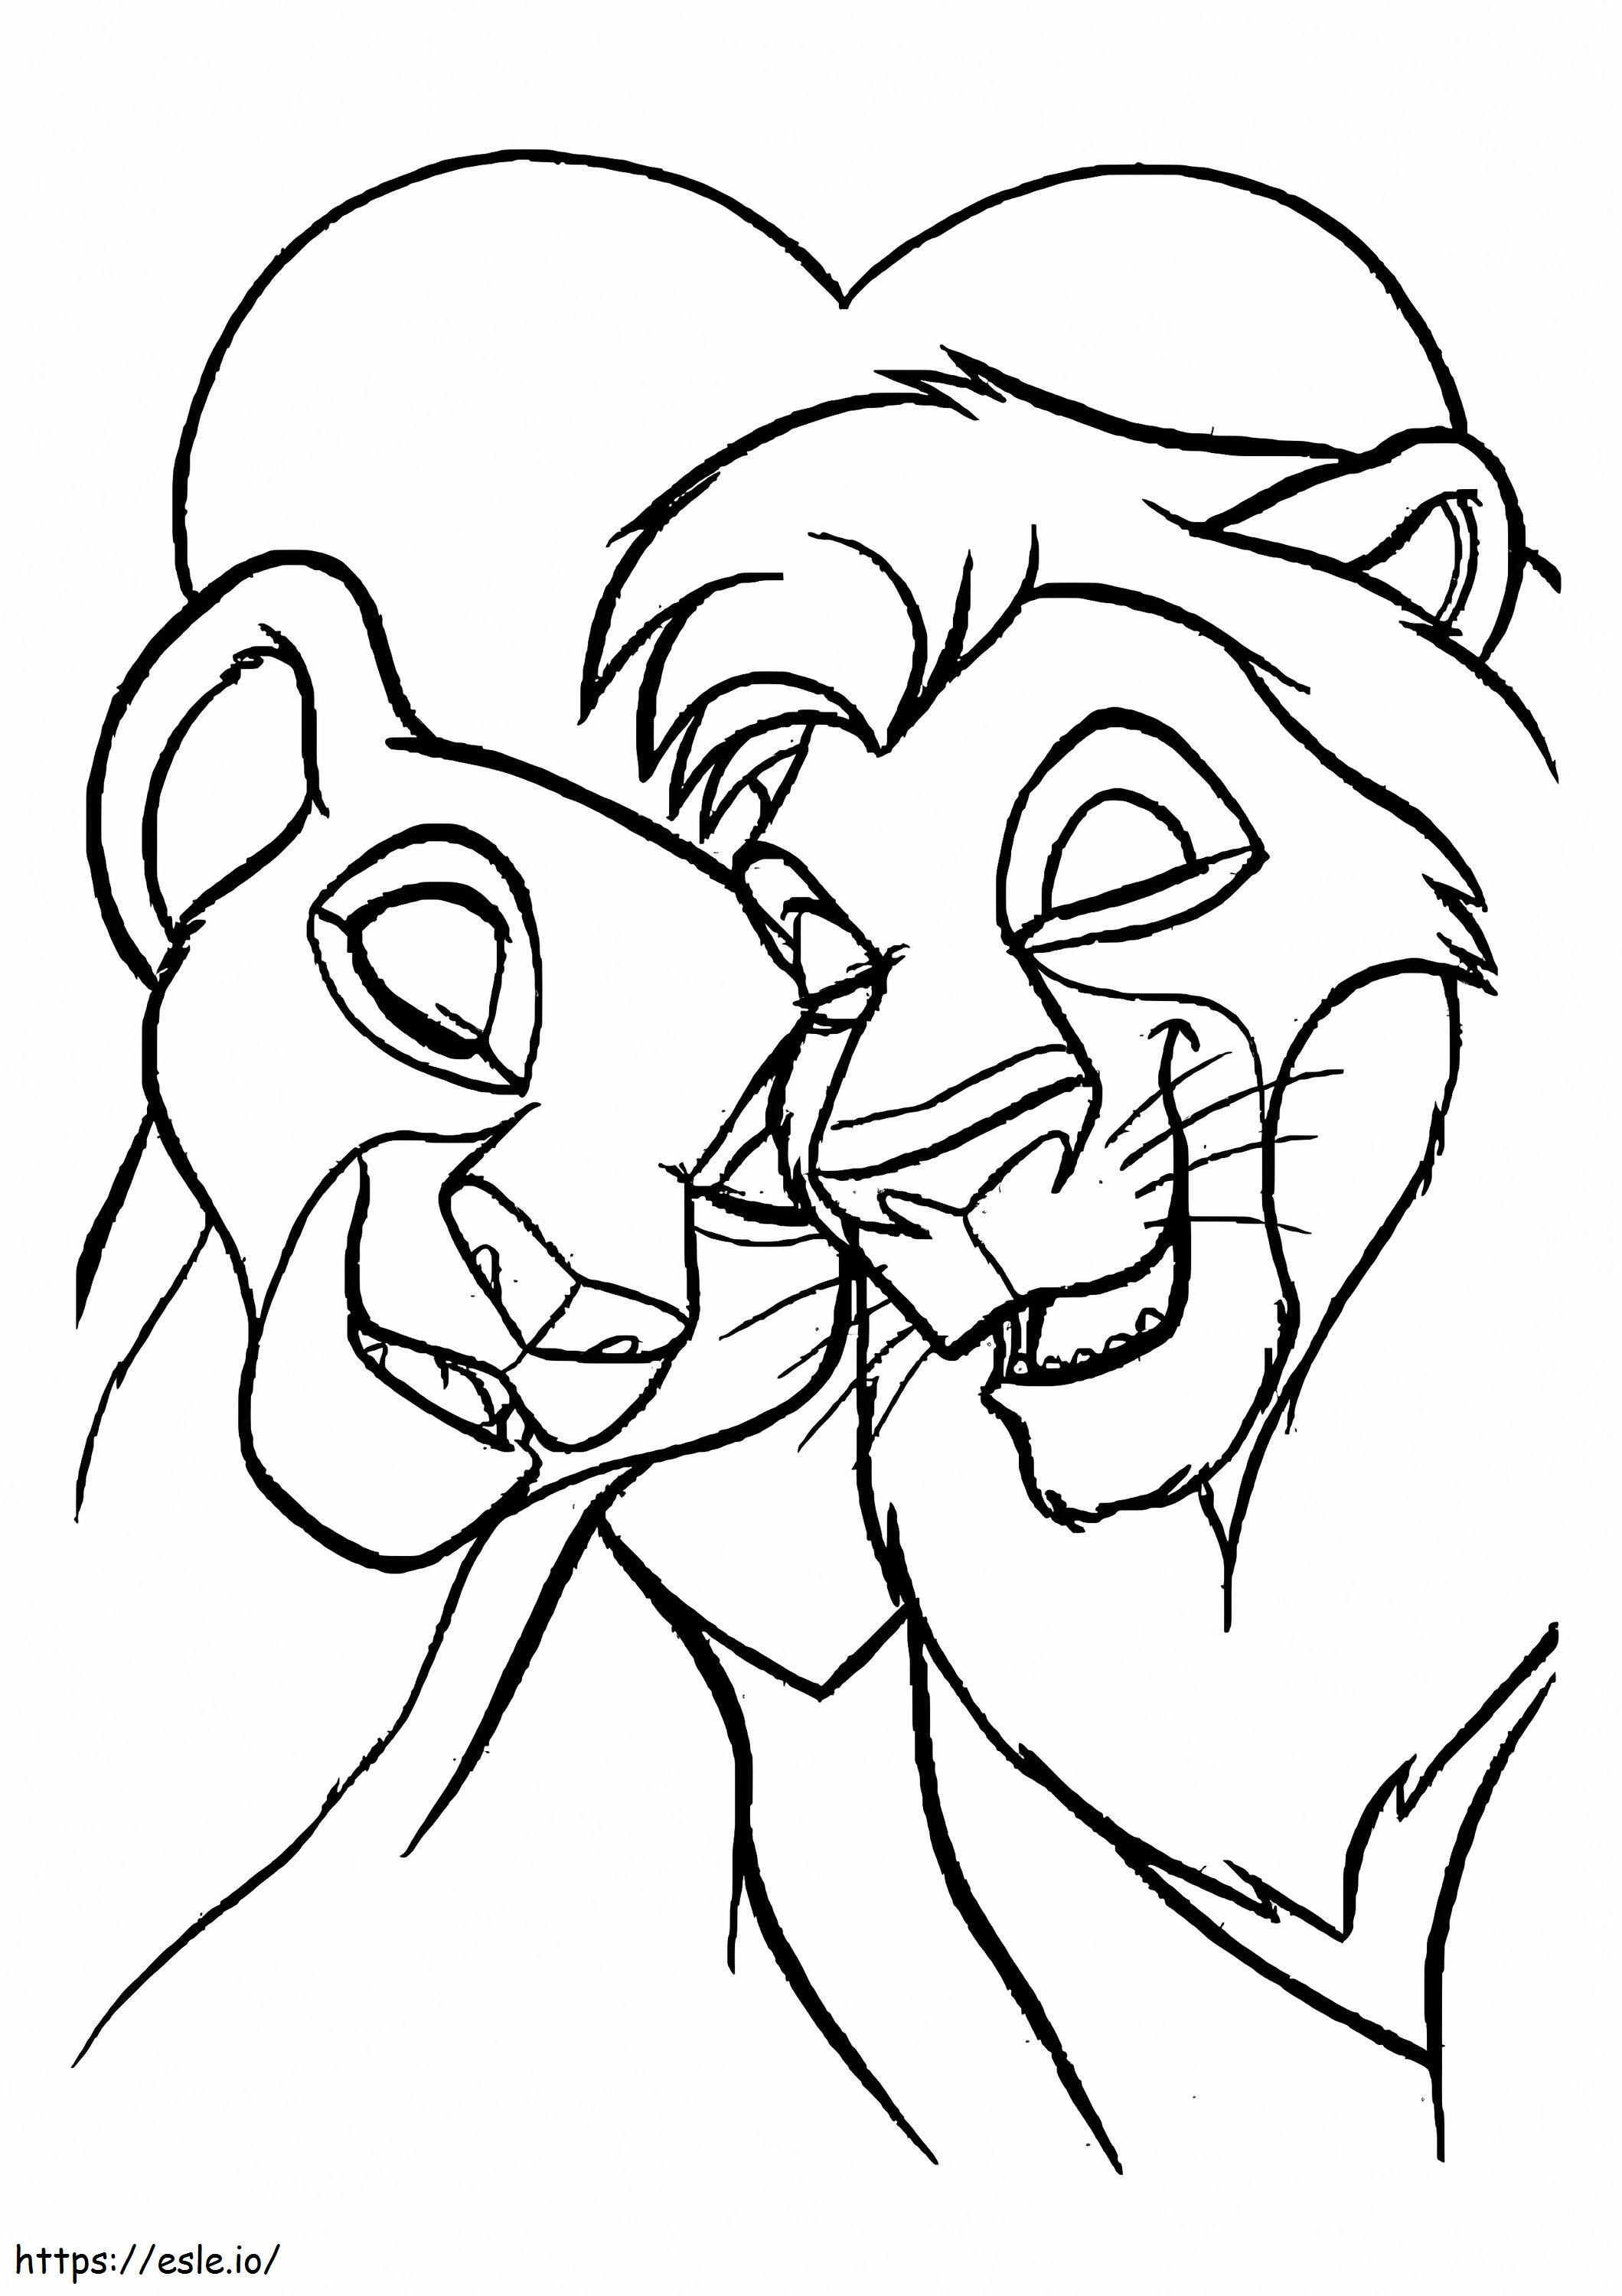 König der Löwen Disney Valentinstag ausmalbilder